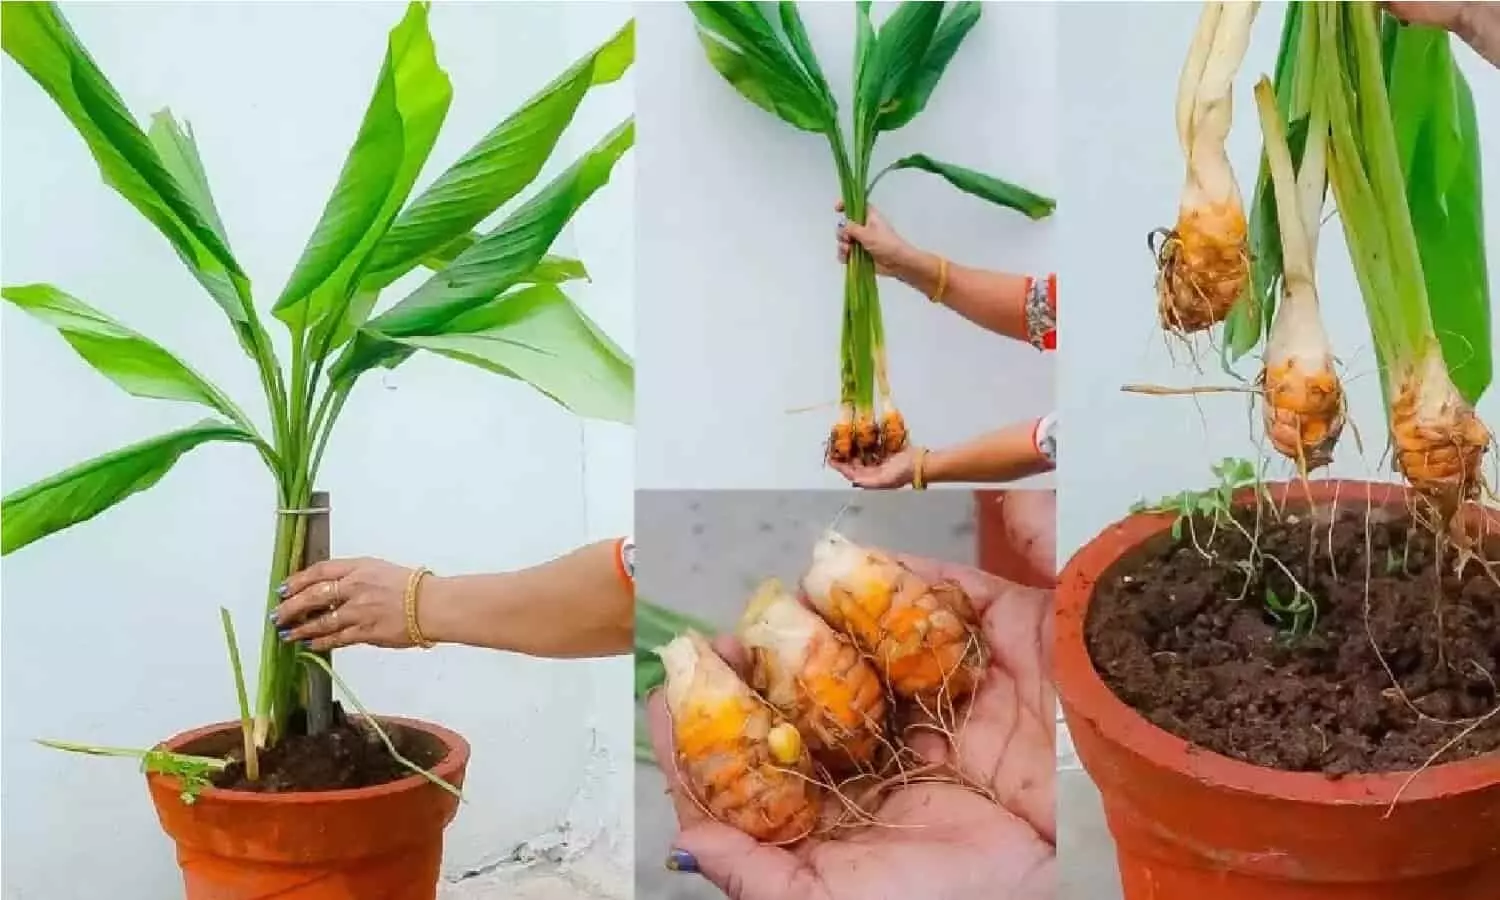 Haldi Plant In Home: जिसने भी लगाया हल्दी का पौधा उसके घर में मच गया बवाल, जानिए